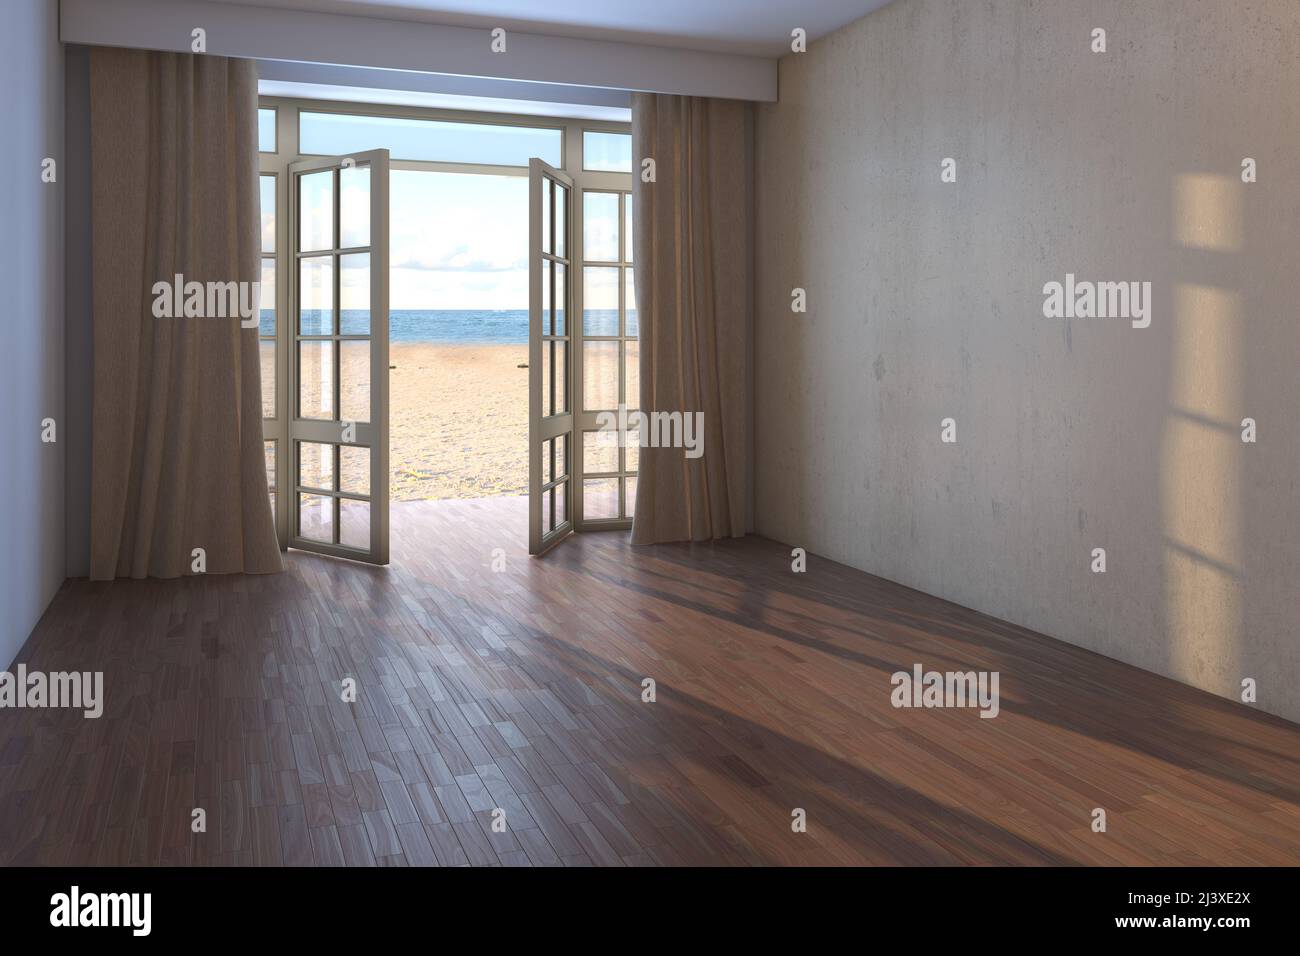 Chambre d'hôtel vide avec vue sur la mer. Intérieur avec porte ouverte donnant sur l'océan, rideaux beige, sable jaune et nuages. Parquet sombre et mur en stuc beige. Rendu 3D, 8K Ultra HD, 7680 x 5121 Banque D'Images